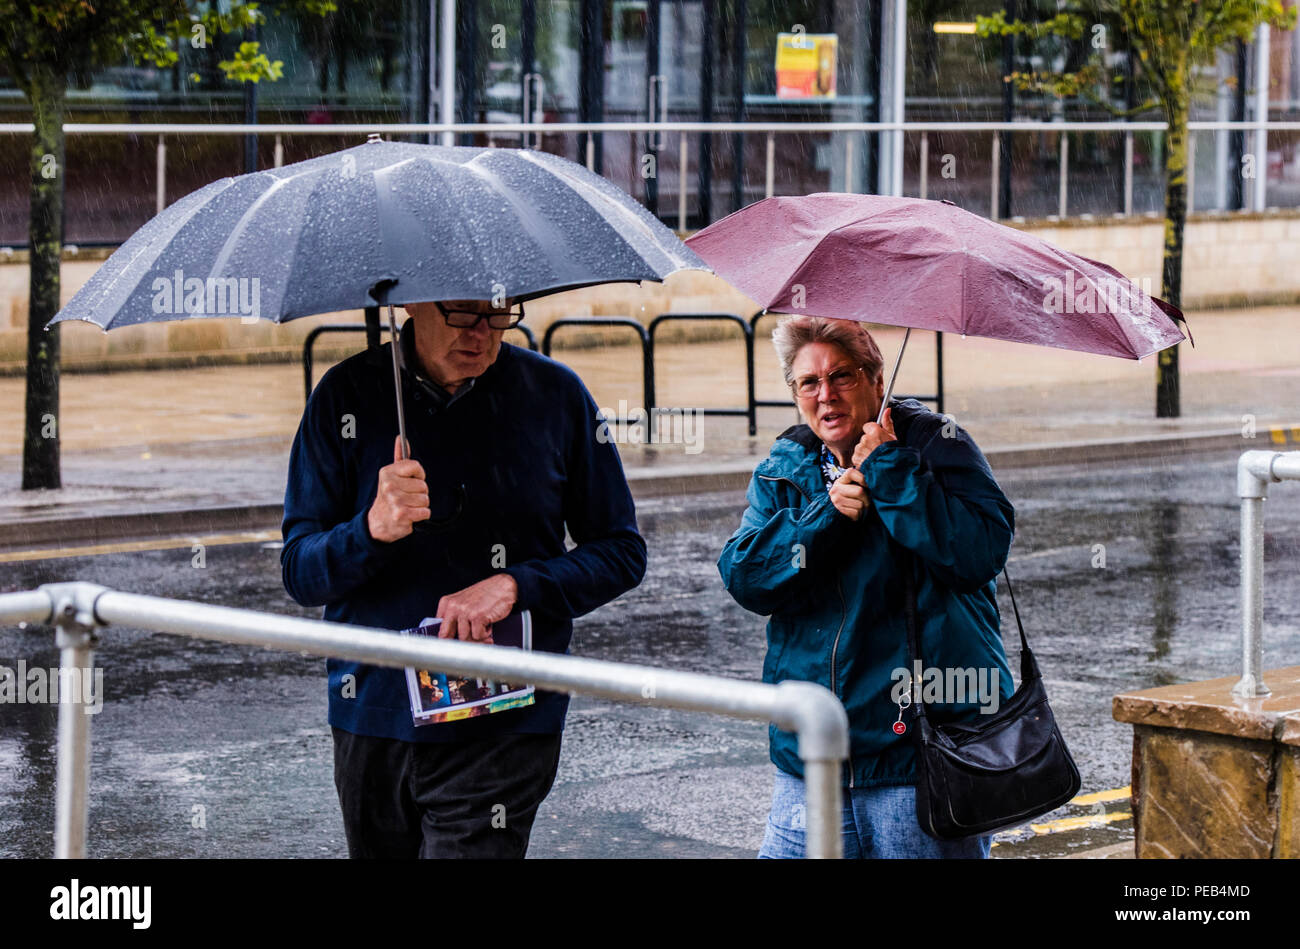 L'homme et la femme marche dans une tempête de pluie, s'abritant sous des parasols, Harrogate, North Yorkshire, UK Banque D'Images